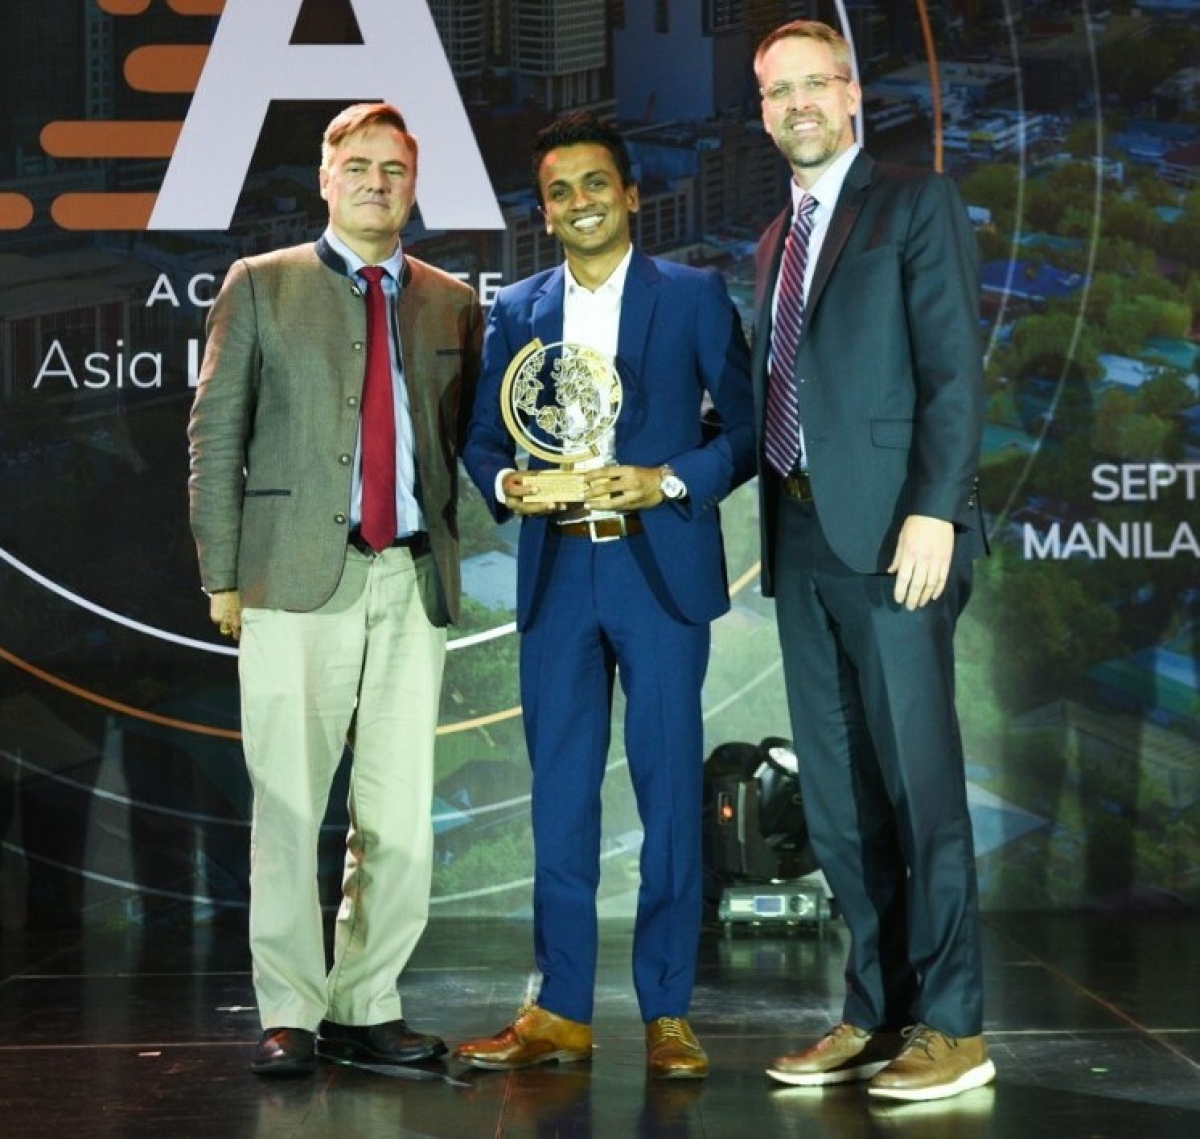 Advocata led by Dhananatha wins 2022 Asia Liberty Award